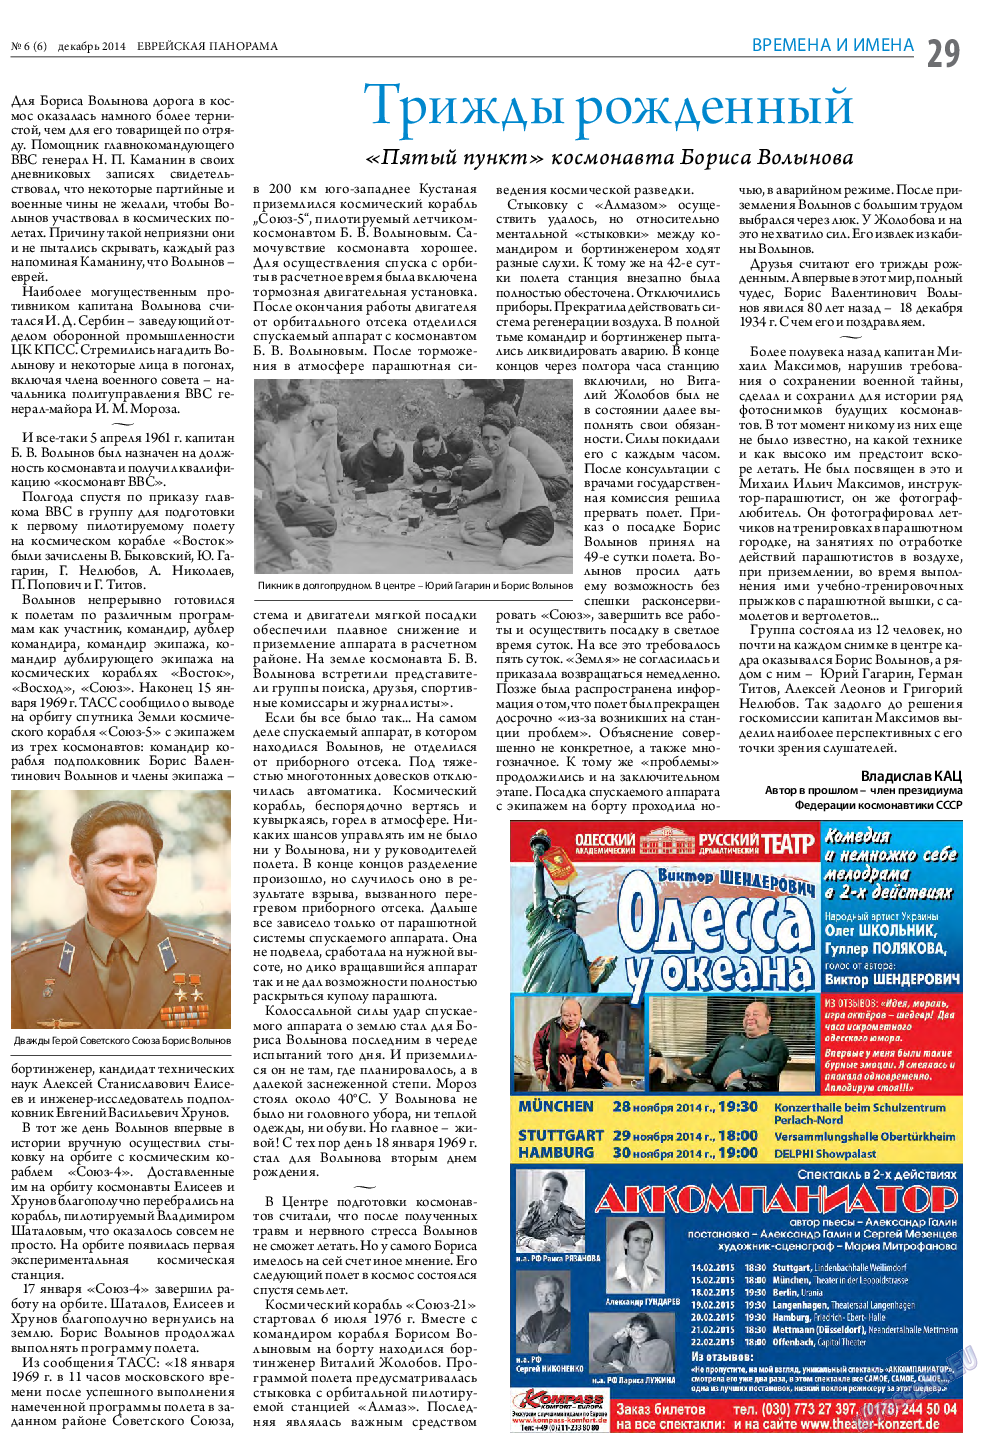 Еврейская панорама (газета). 2014 год, номер 6, стр. 29